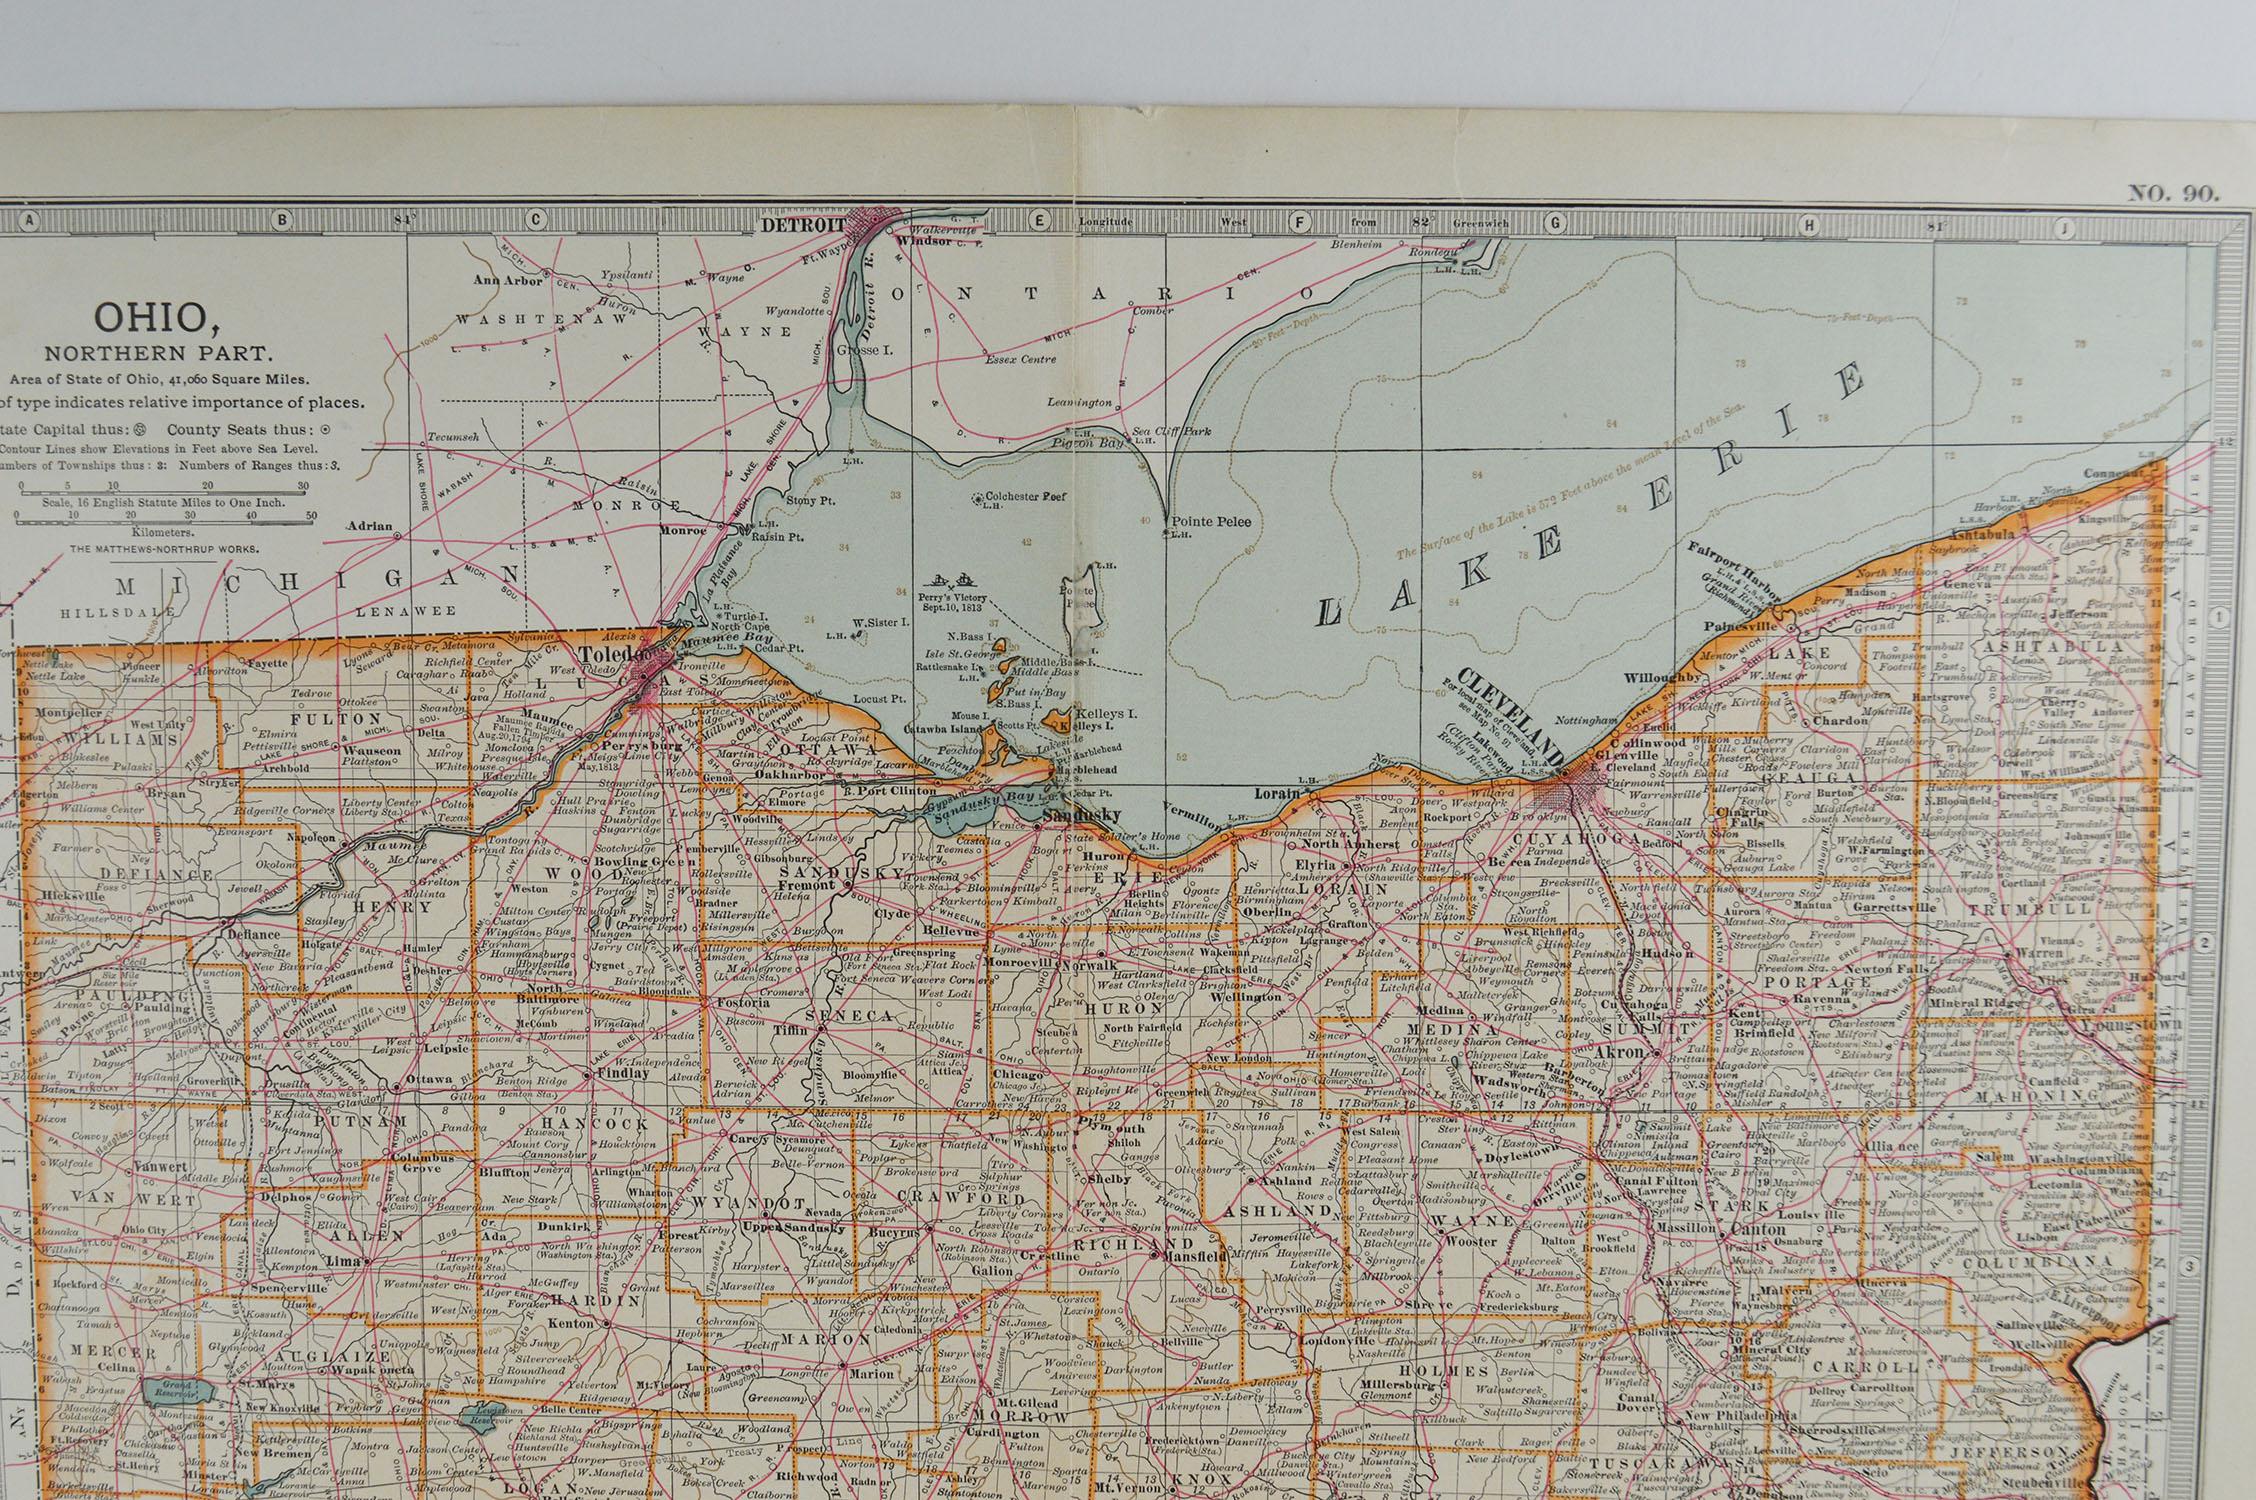 Other Original Antique Map of Ohio, circa 1890